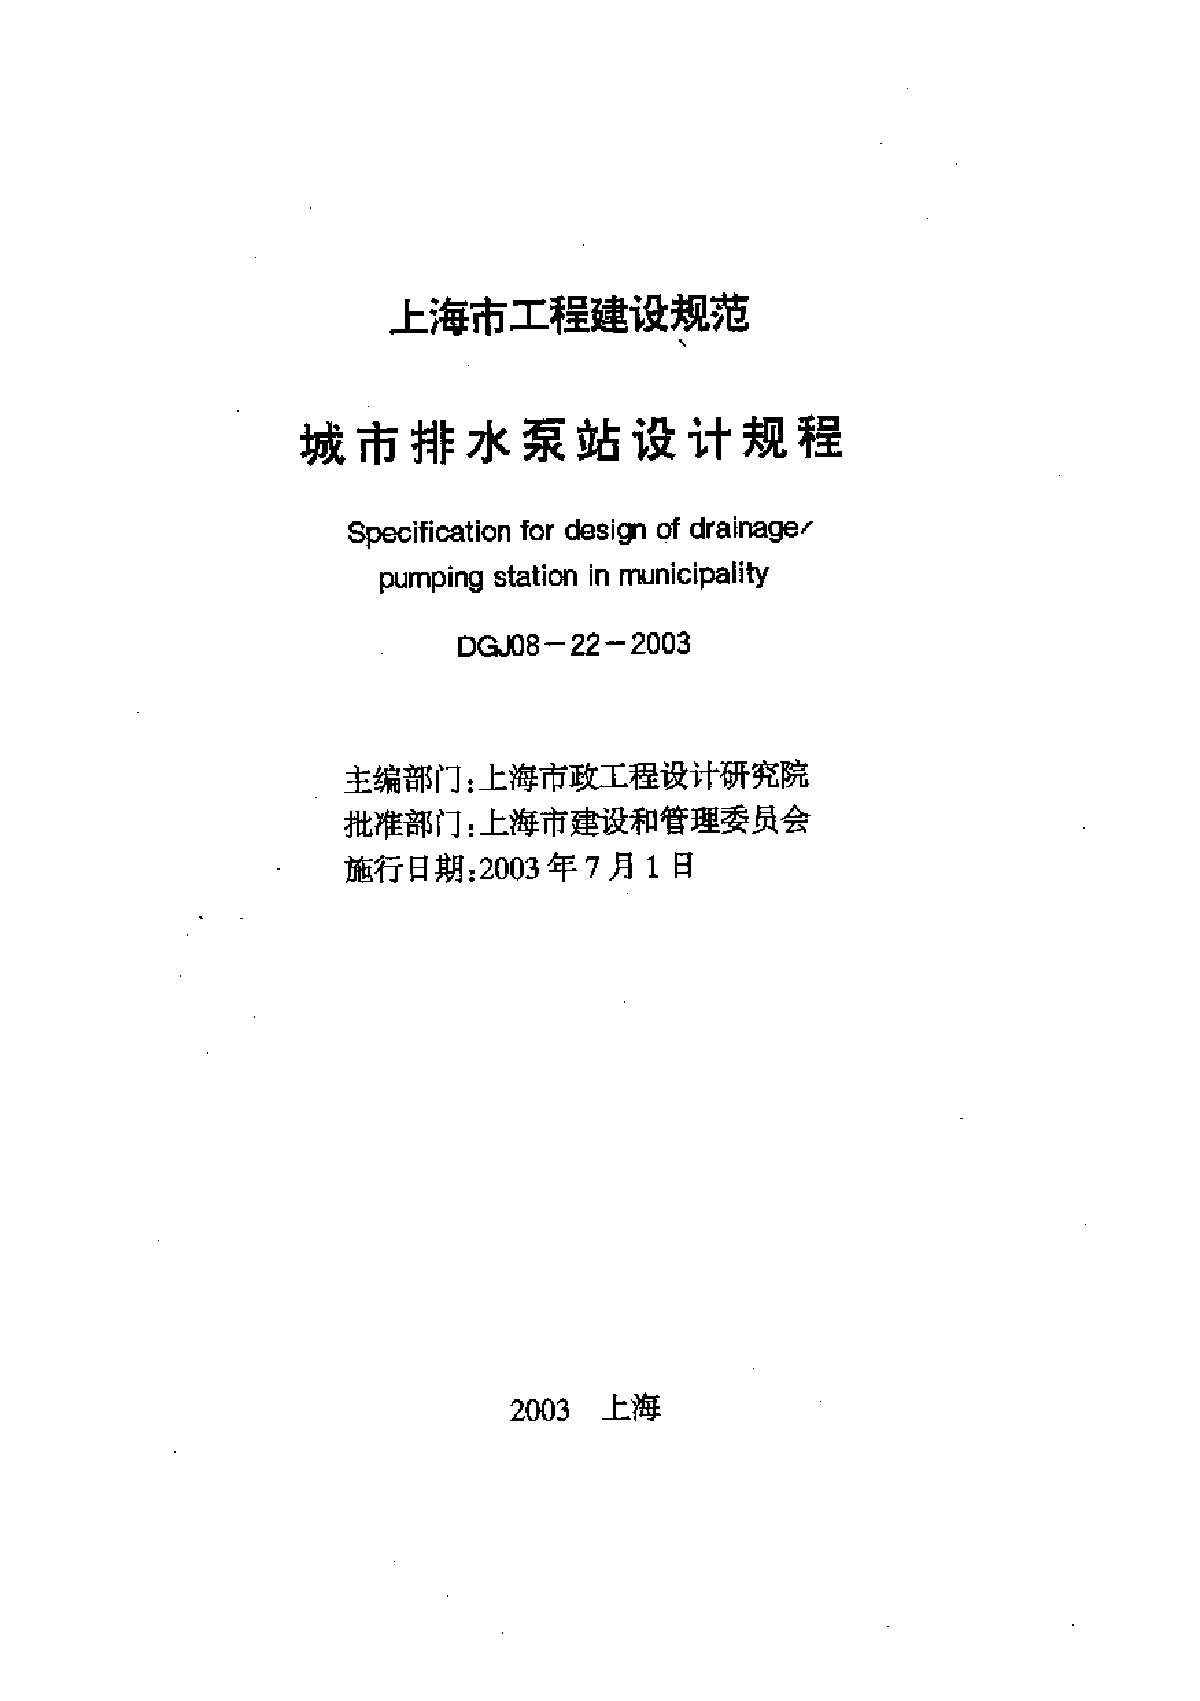 上海城市排水泵站设计规程DGJ08-22-2003.pdf